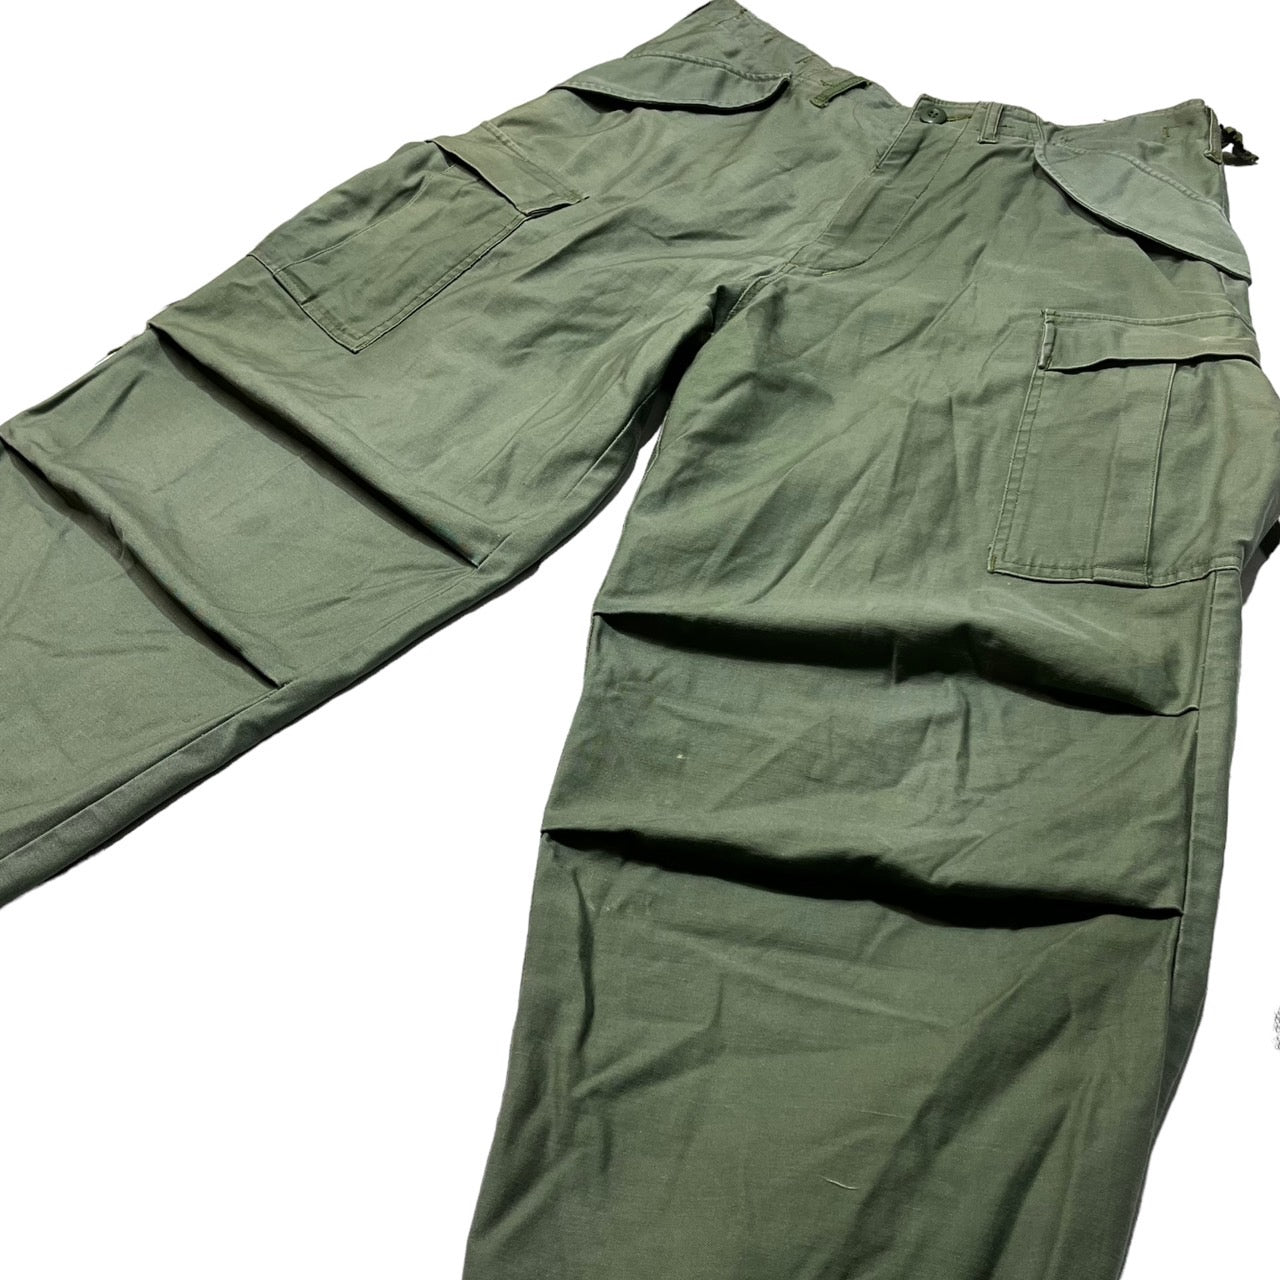 US ARMY(アメリカ軍) 70's M65  cargo pants ミリタリー カーゴパンツ 表記無し カーキ TALONジップ